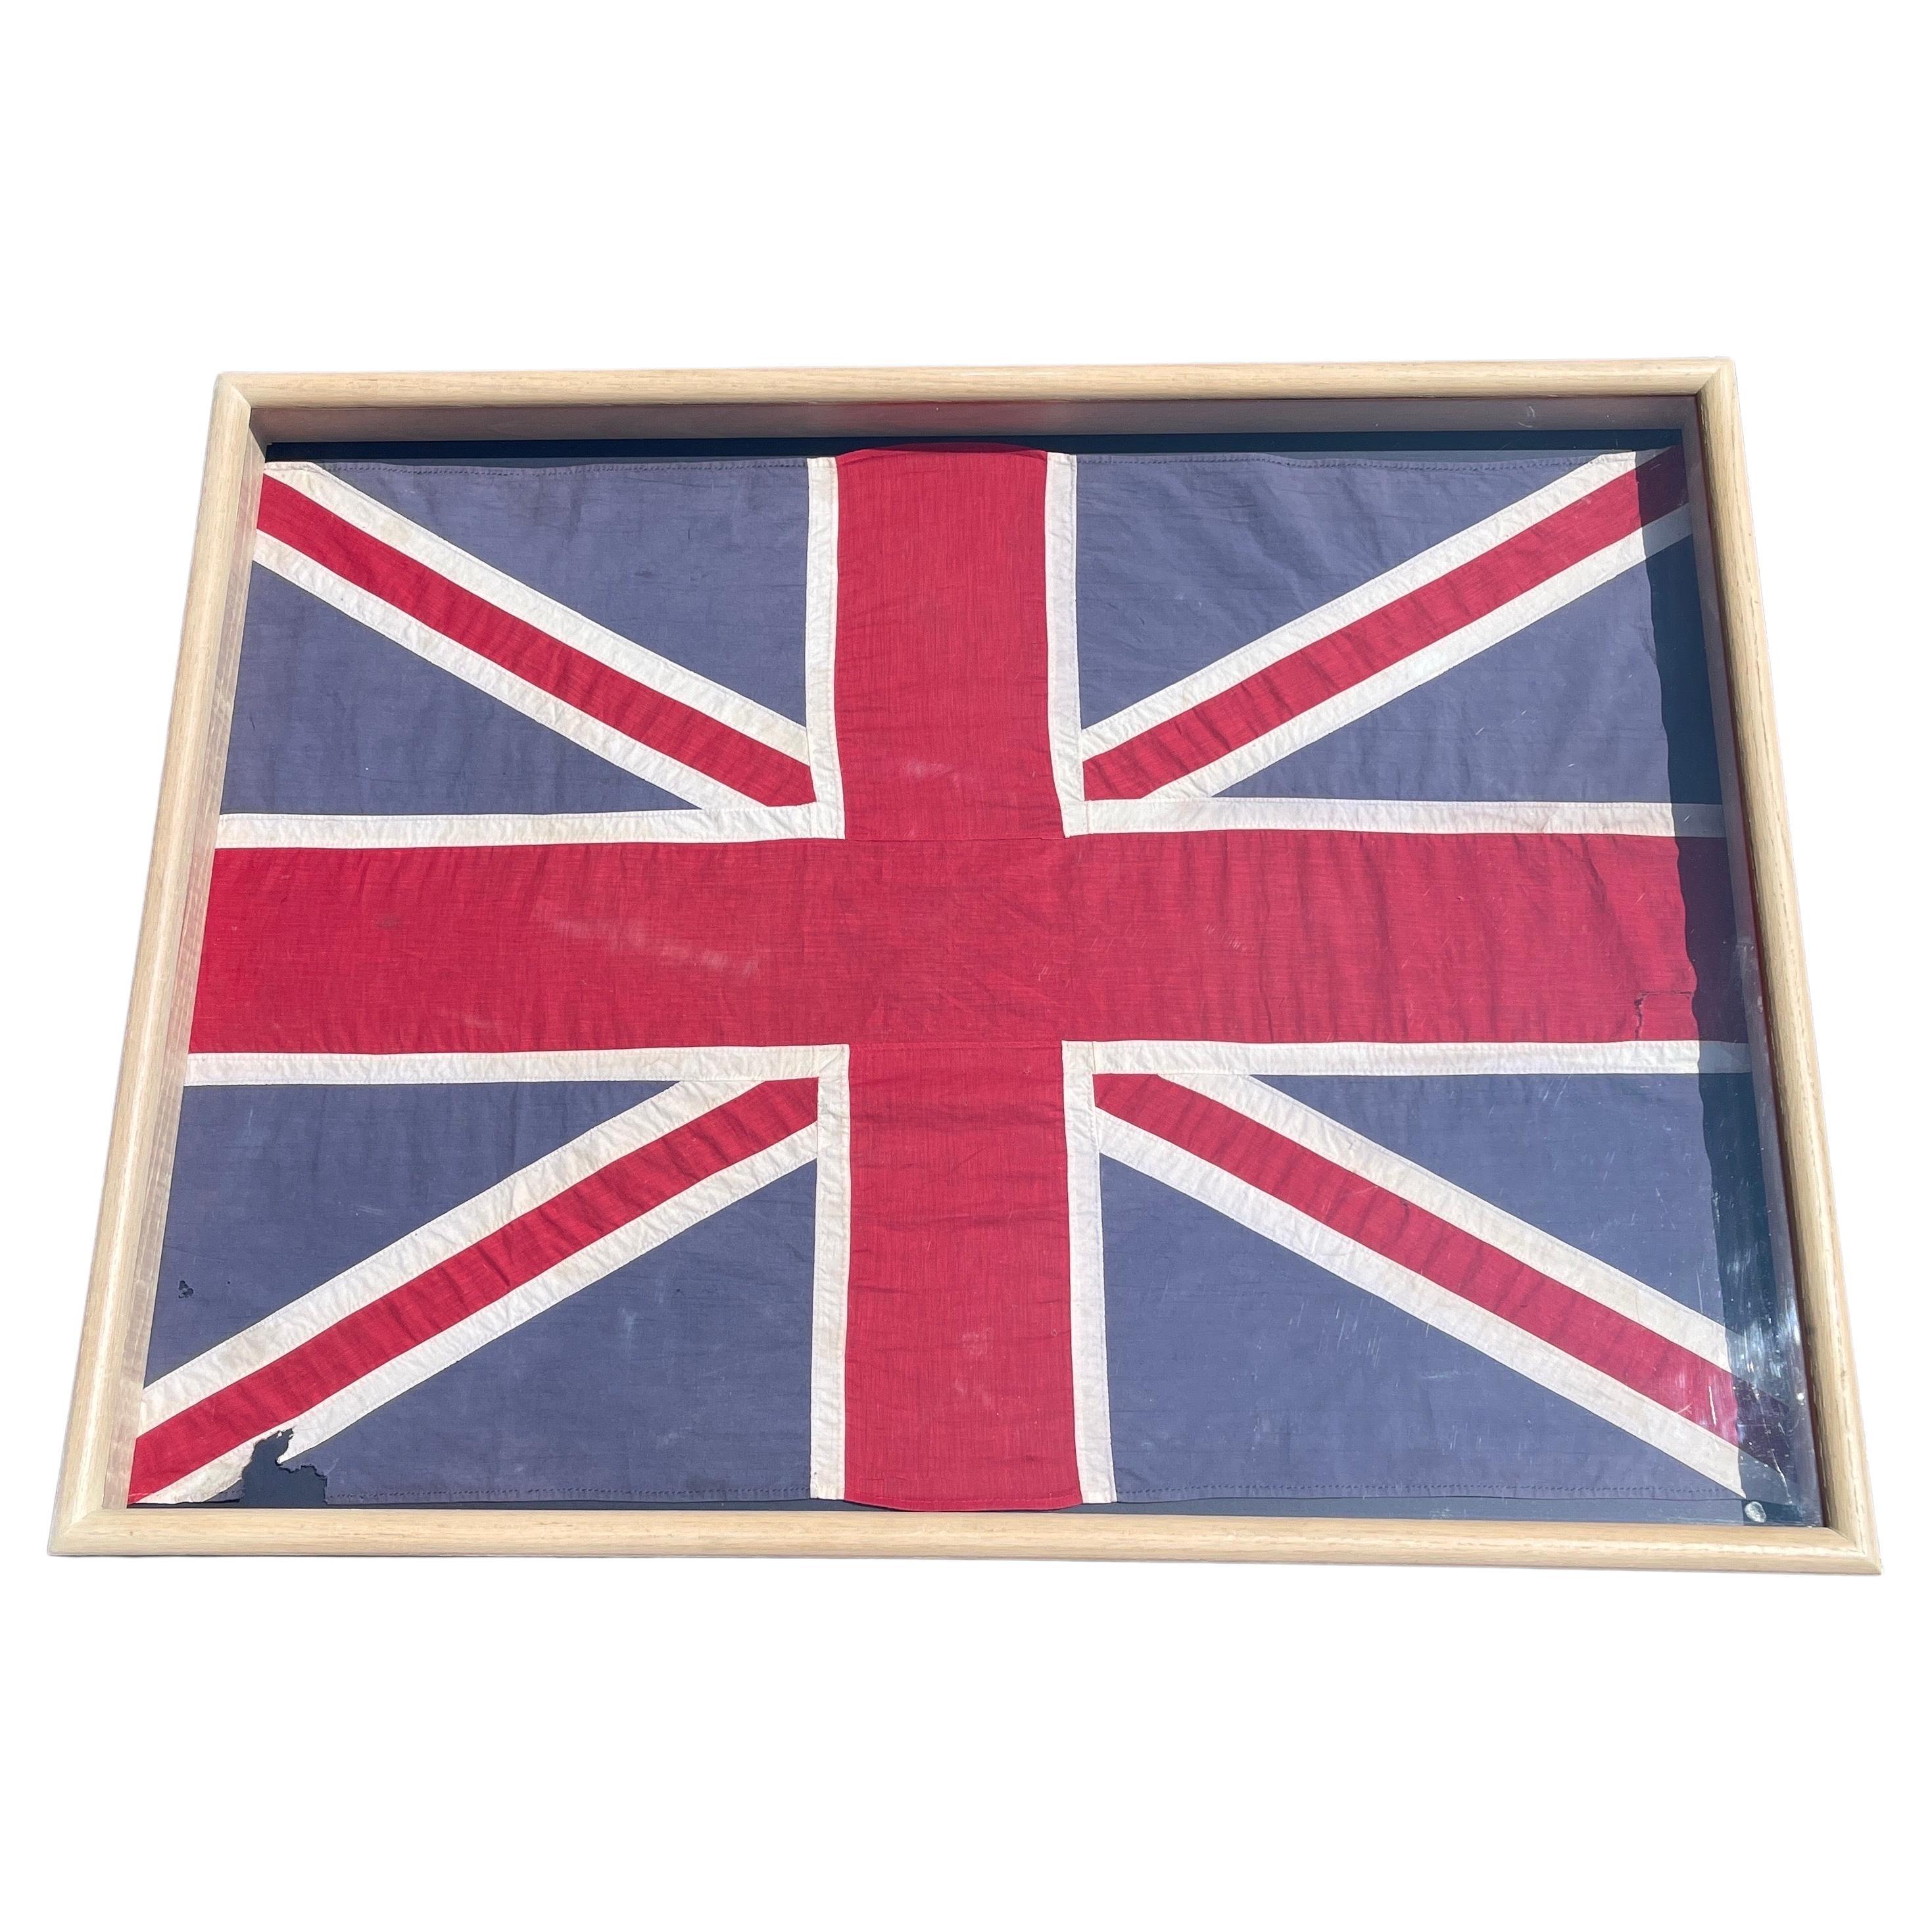 Drapeau Union Jack des années 1950 encadré, Londres Angleterre

Ce drapeau britannique vintage a été acheté à Londres il y a de nombreuses années. Cet Union Jack rouge, blanc et bleu des années 1950 a été placé dans un cadre en bois neutre avec